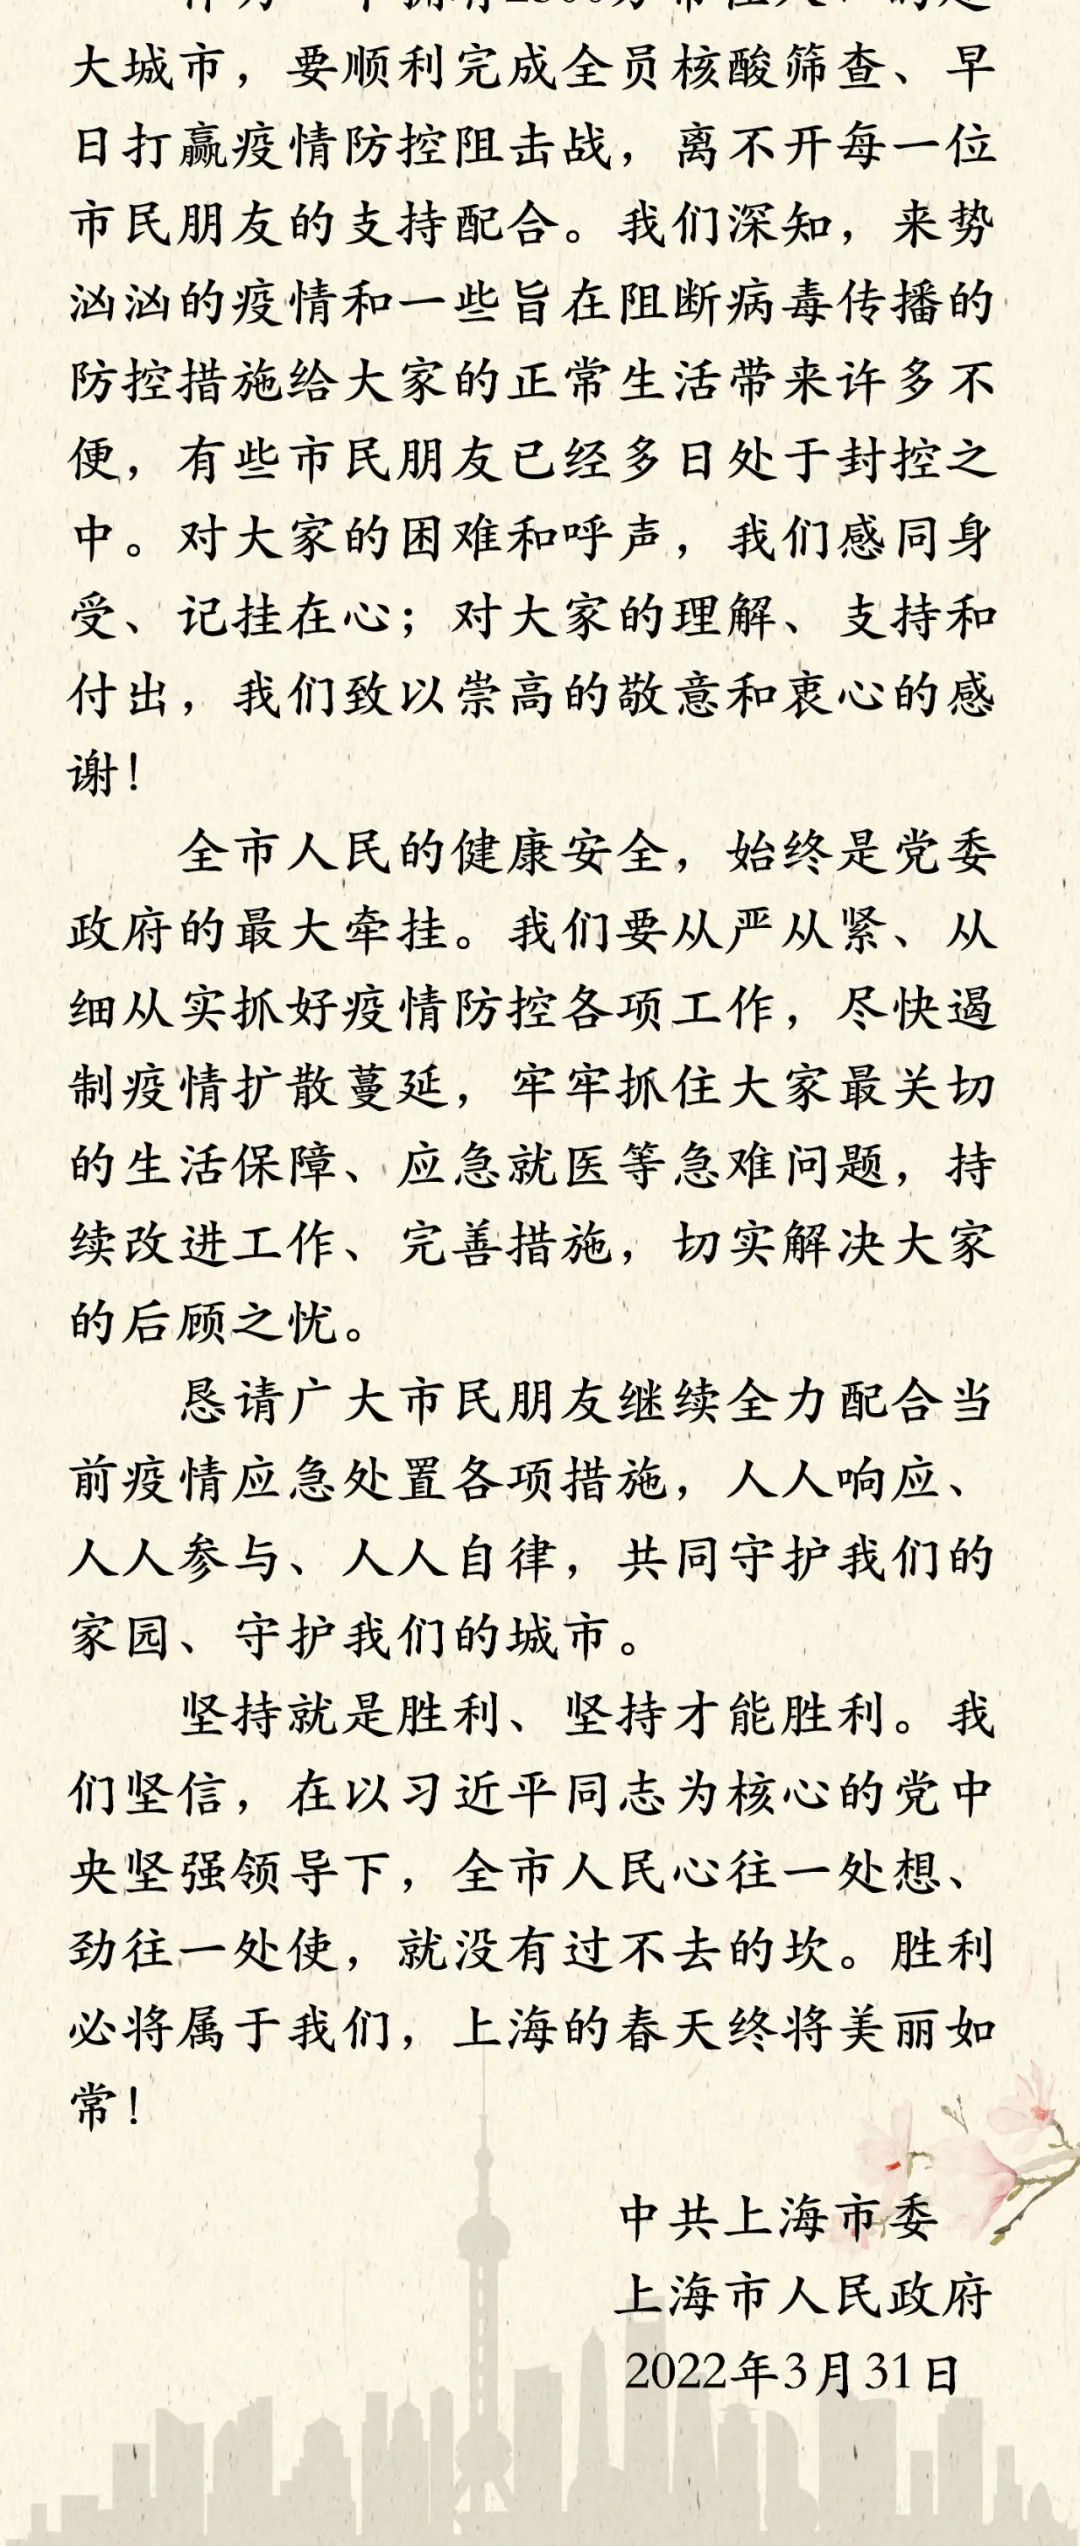 上海市委市政府致信全体市民：感谢理解支持和付出，让我们共同守护家园守护城市